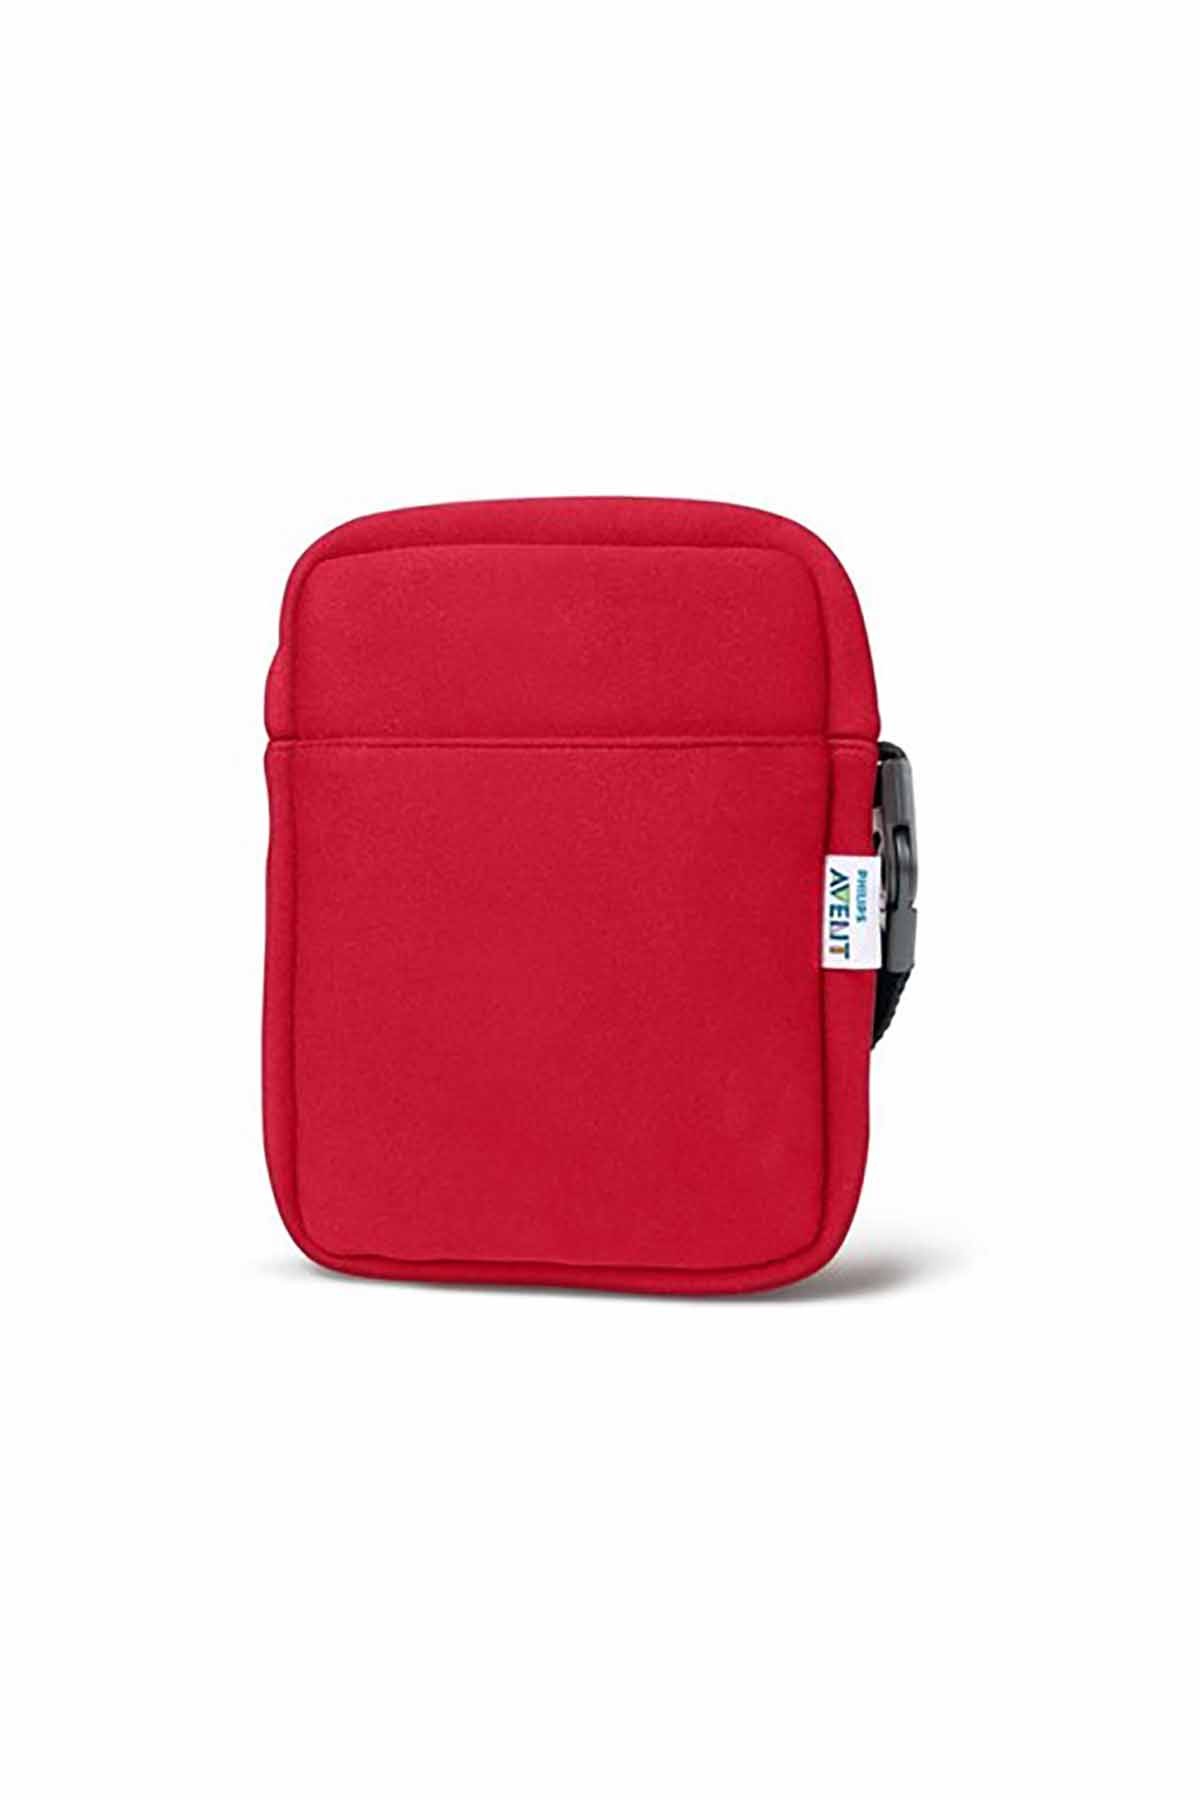 Philips Avent Thermal Biberon ve Bardak Taşıyıcı Çanta Kırmızı